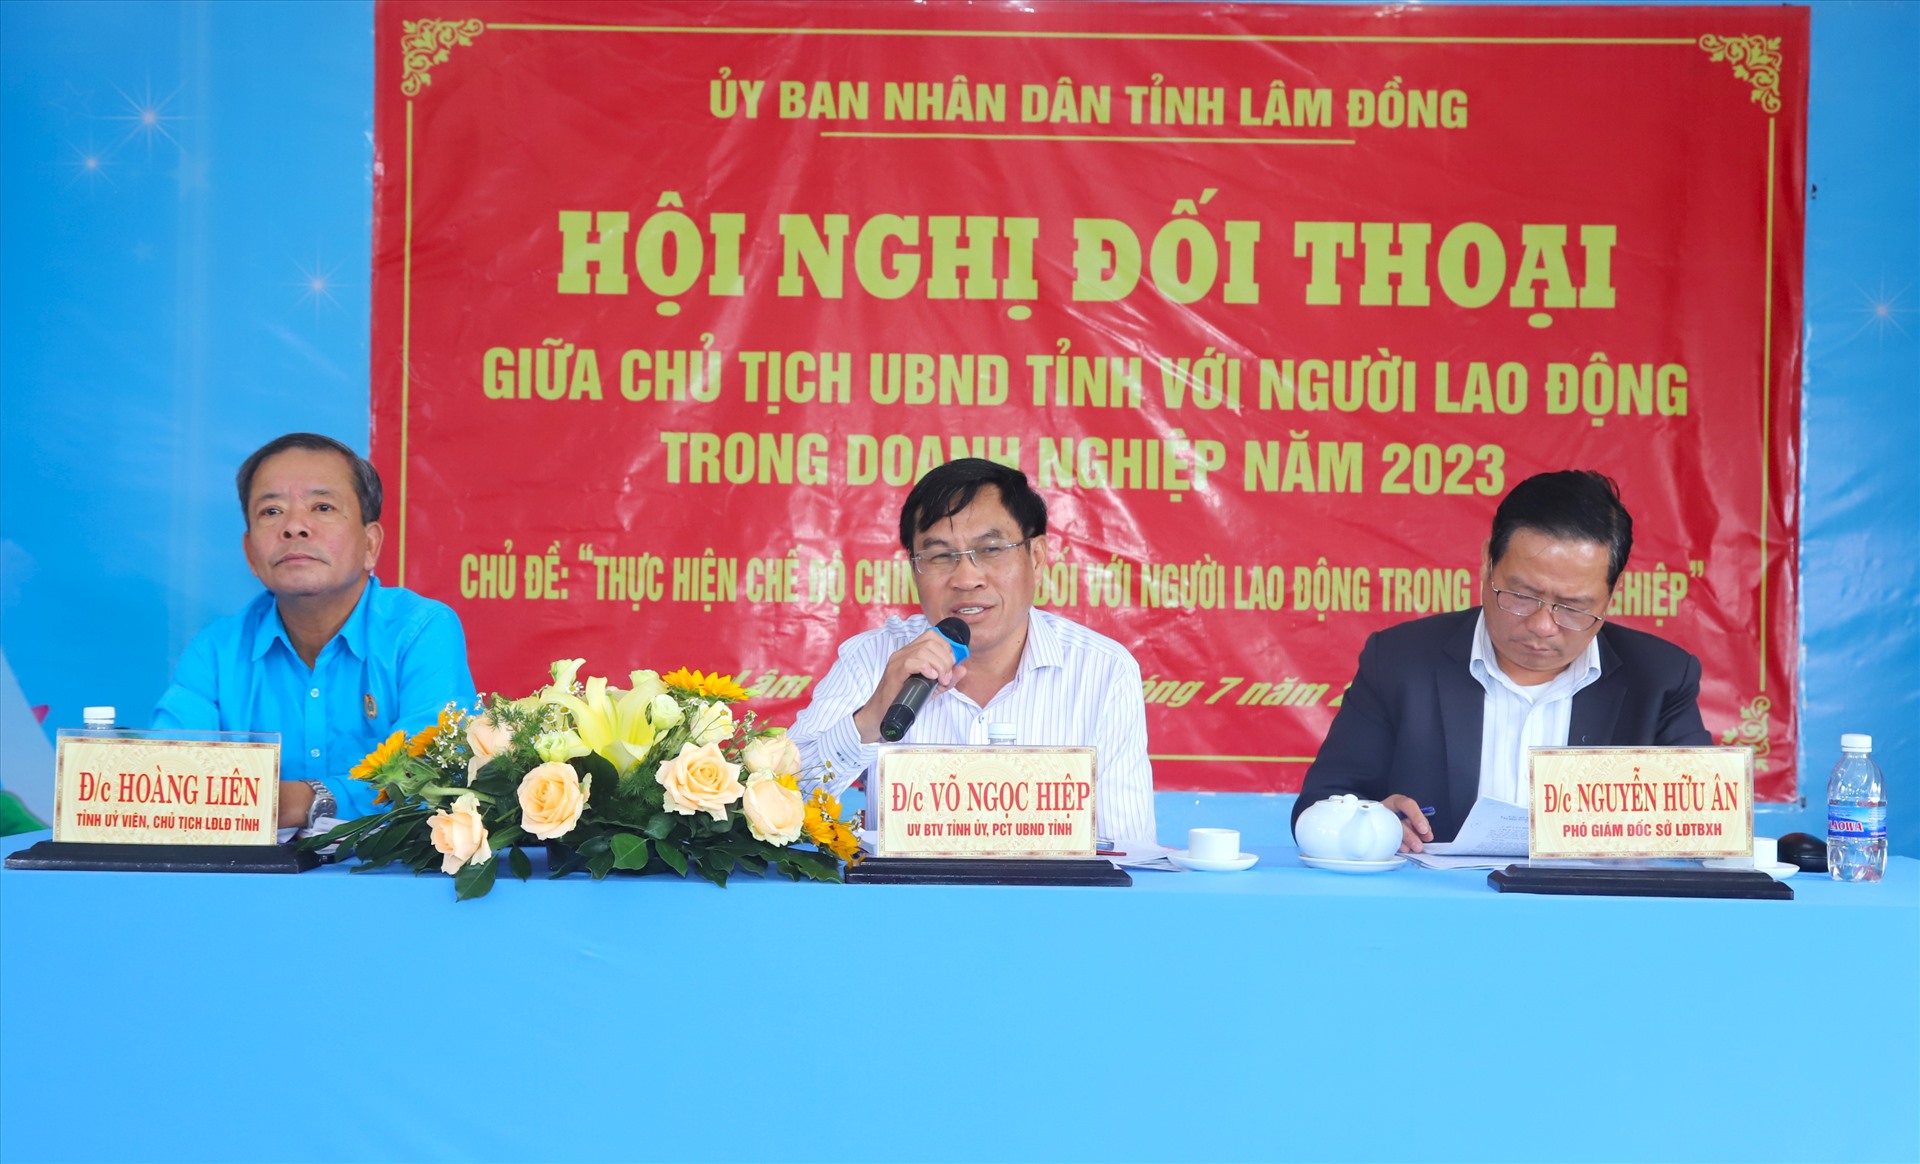 Lãnh đạo UBND tỉnh Lâm Đồng và các sở, ban, ngành, địa phương đã tiếp thu, trả lời và có những chỉ đạo quan tâm, chăm lo cho đời sống người lao động trên địa bàn tỉnh. Ảnh: Minh Đạo